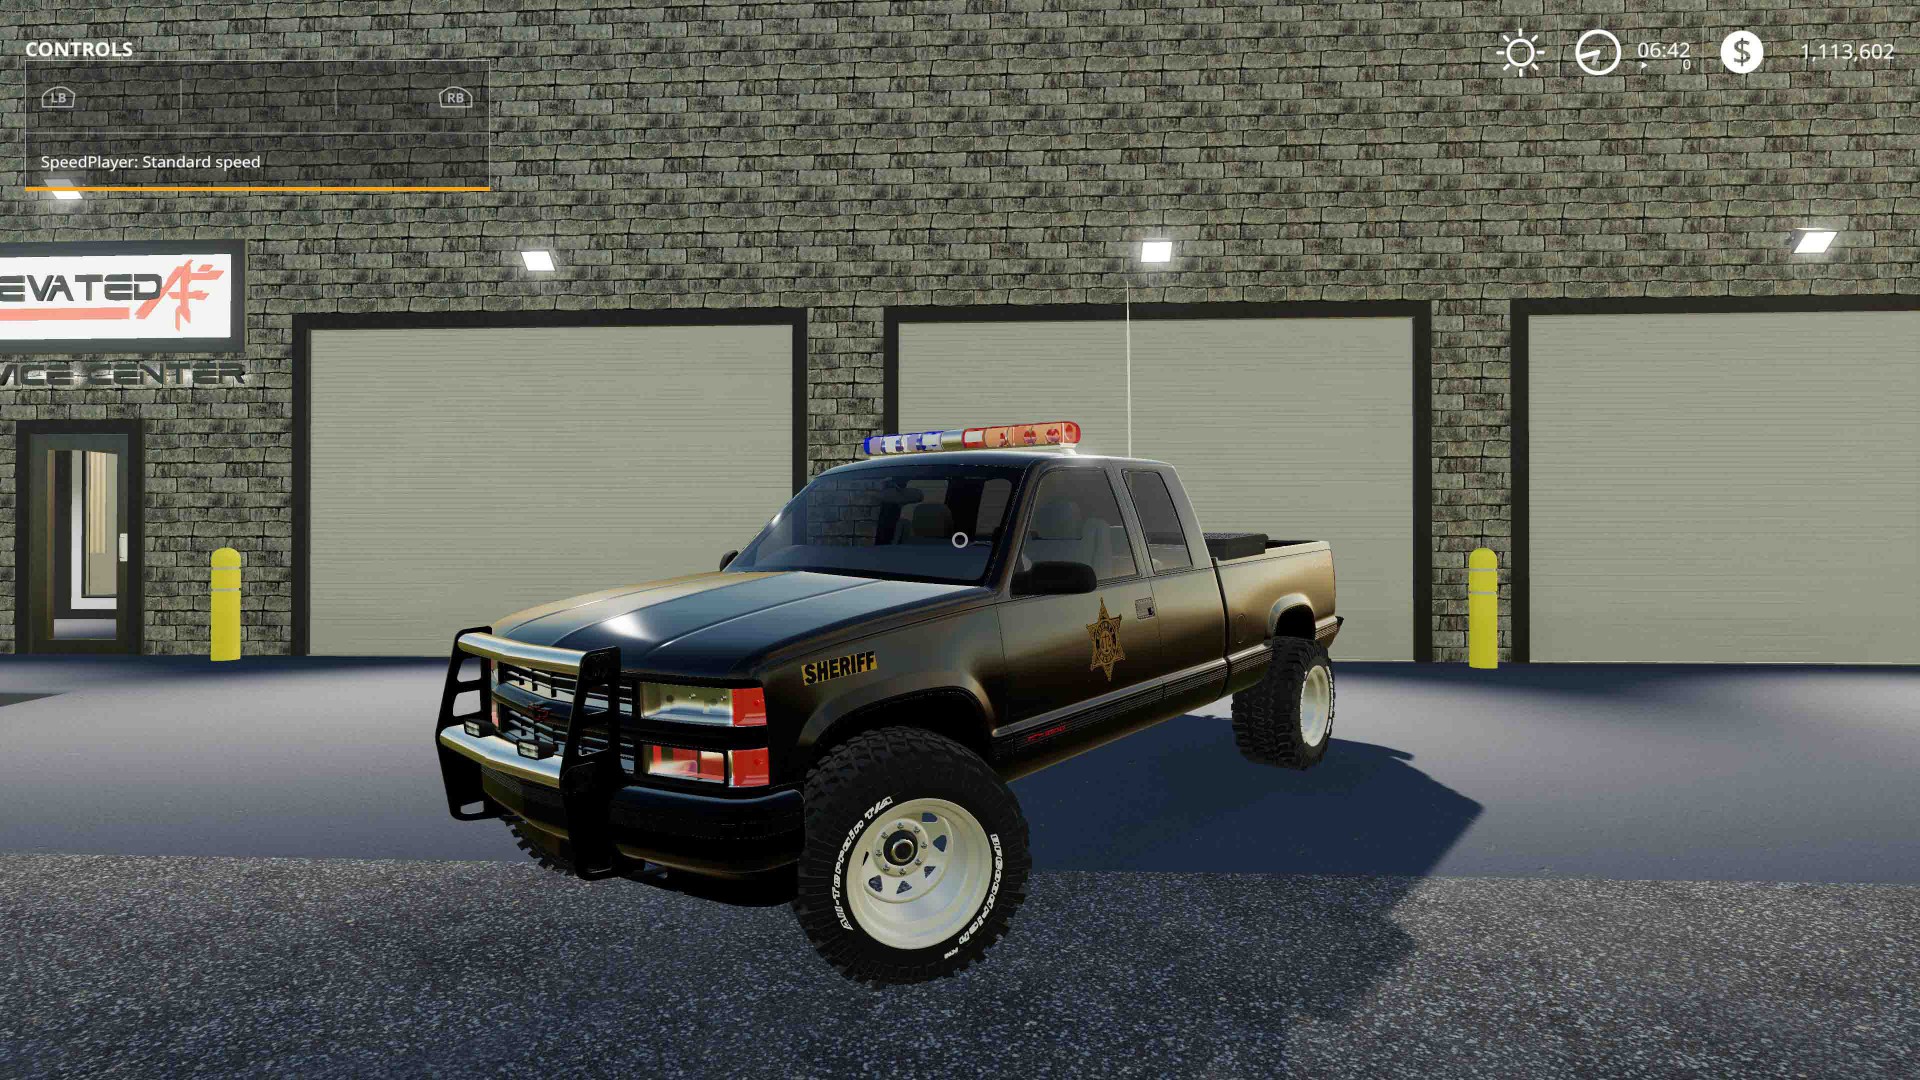 Moд Chevy 1500 Police V1000 для Farming Simulator 2019 Fs 19